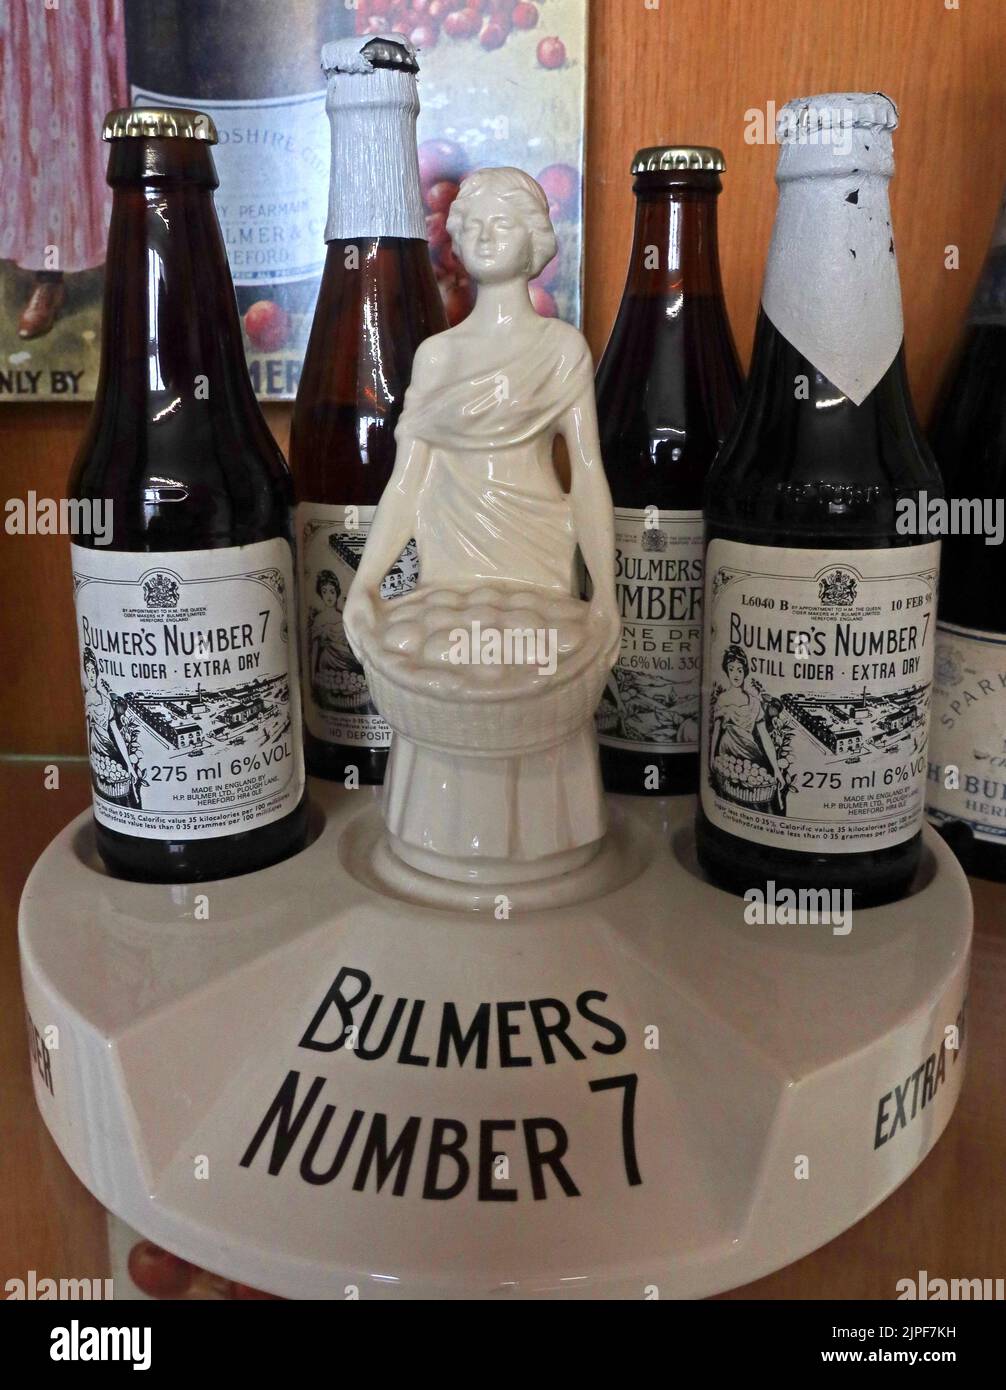 Bulmers Nummer 7 Apfelwein-Display, Keramikbasis, Frauen- und historische extra trockene Apfelwein-Flaschen Stockfoto